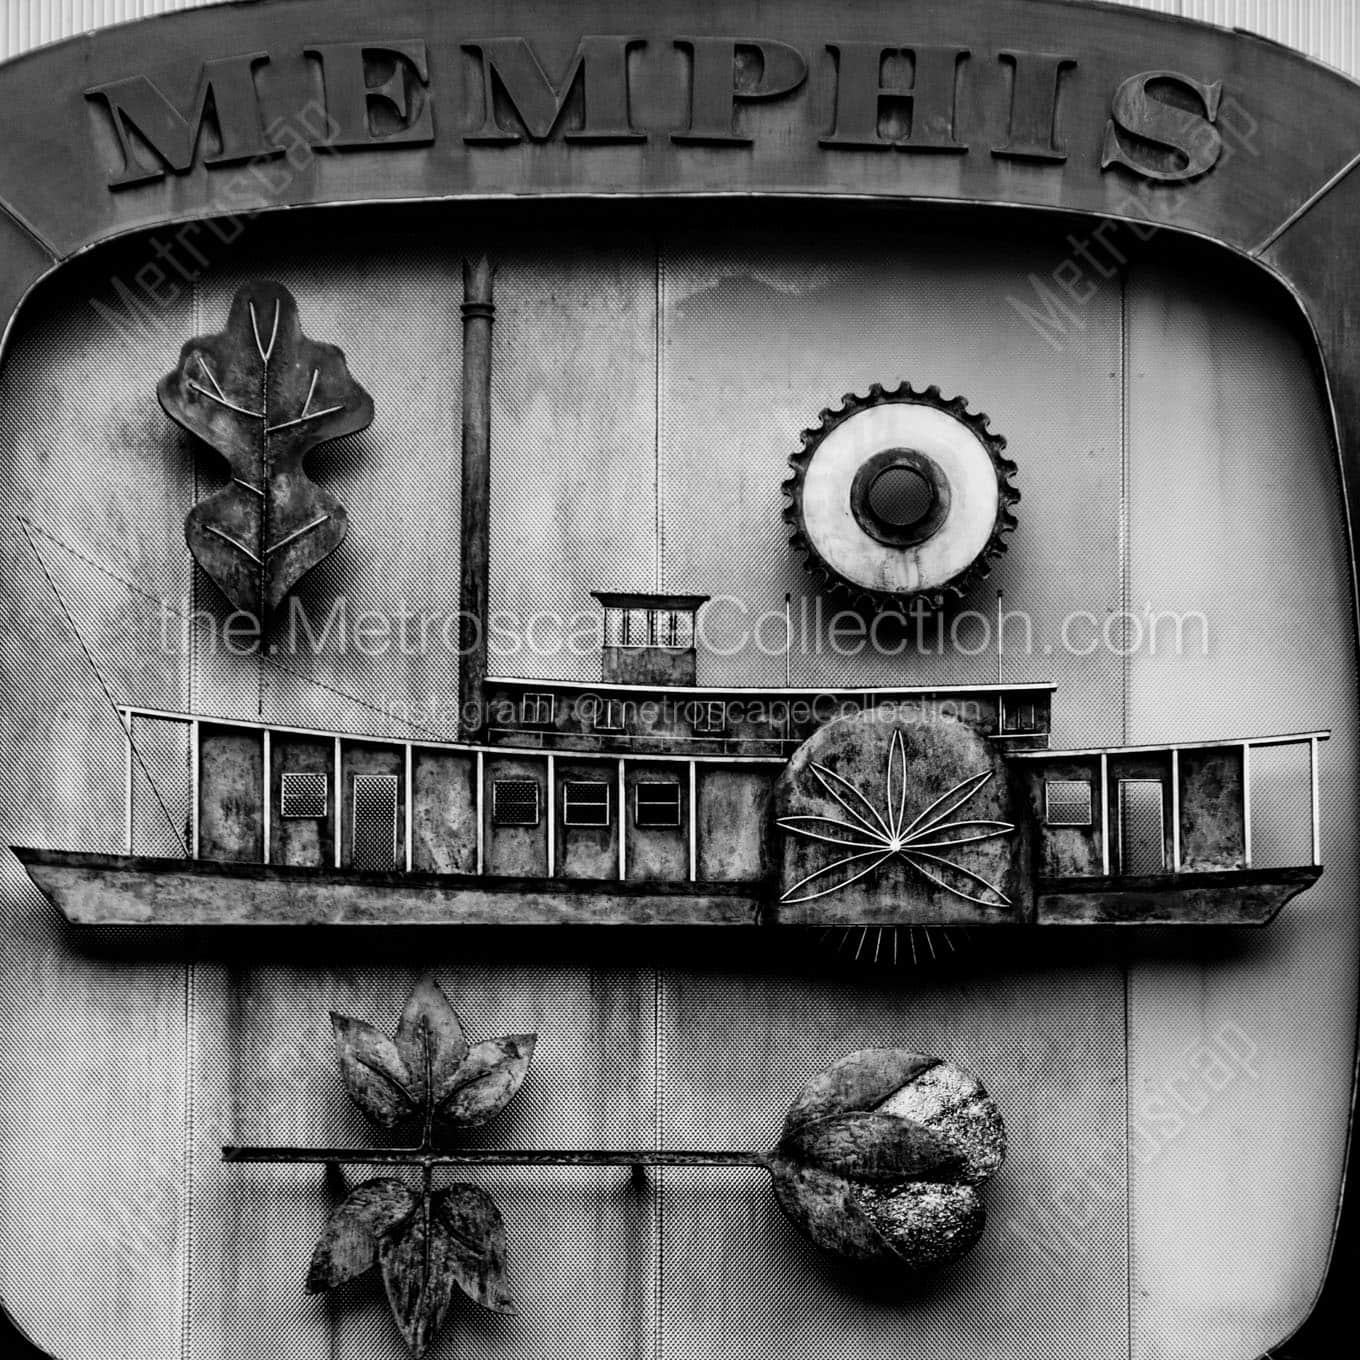 city of memphis sign Black & White Office Art